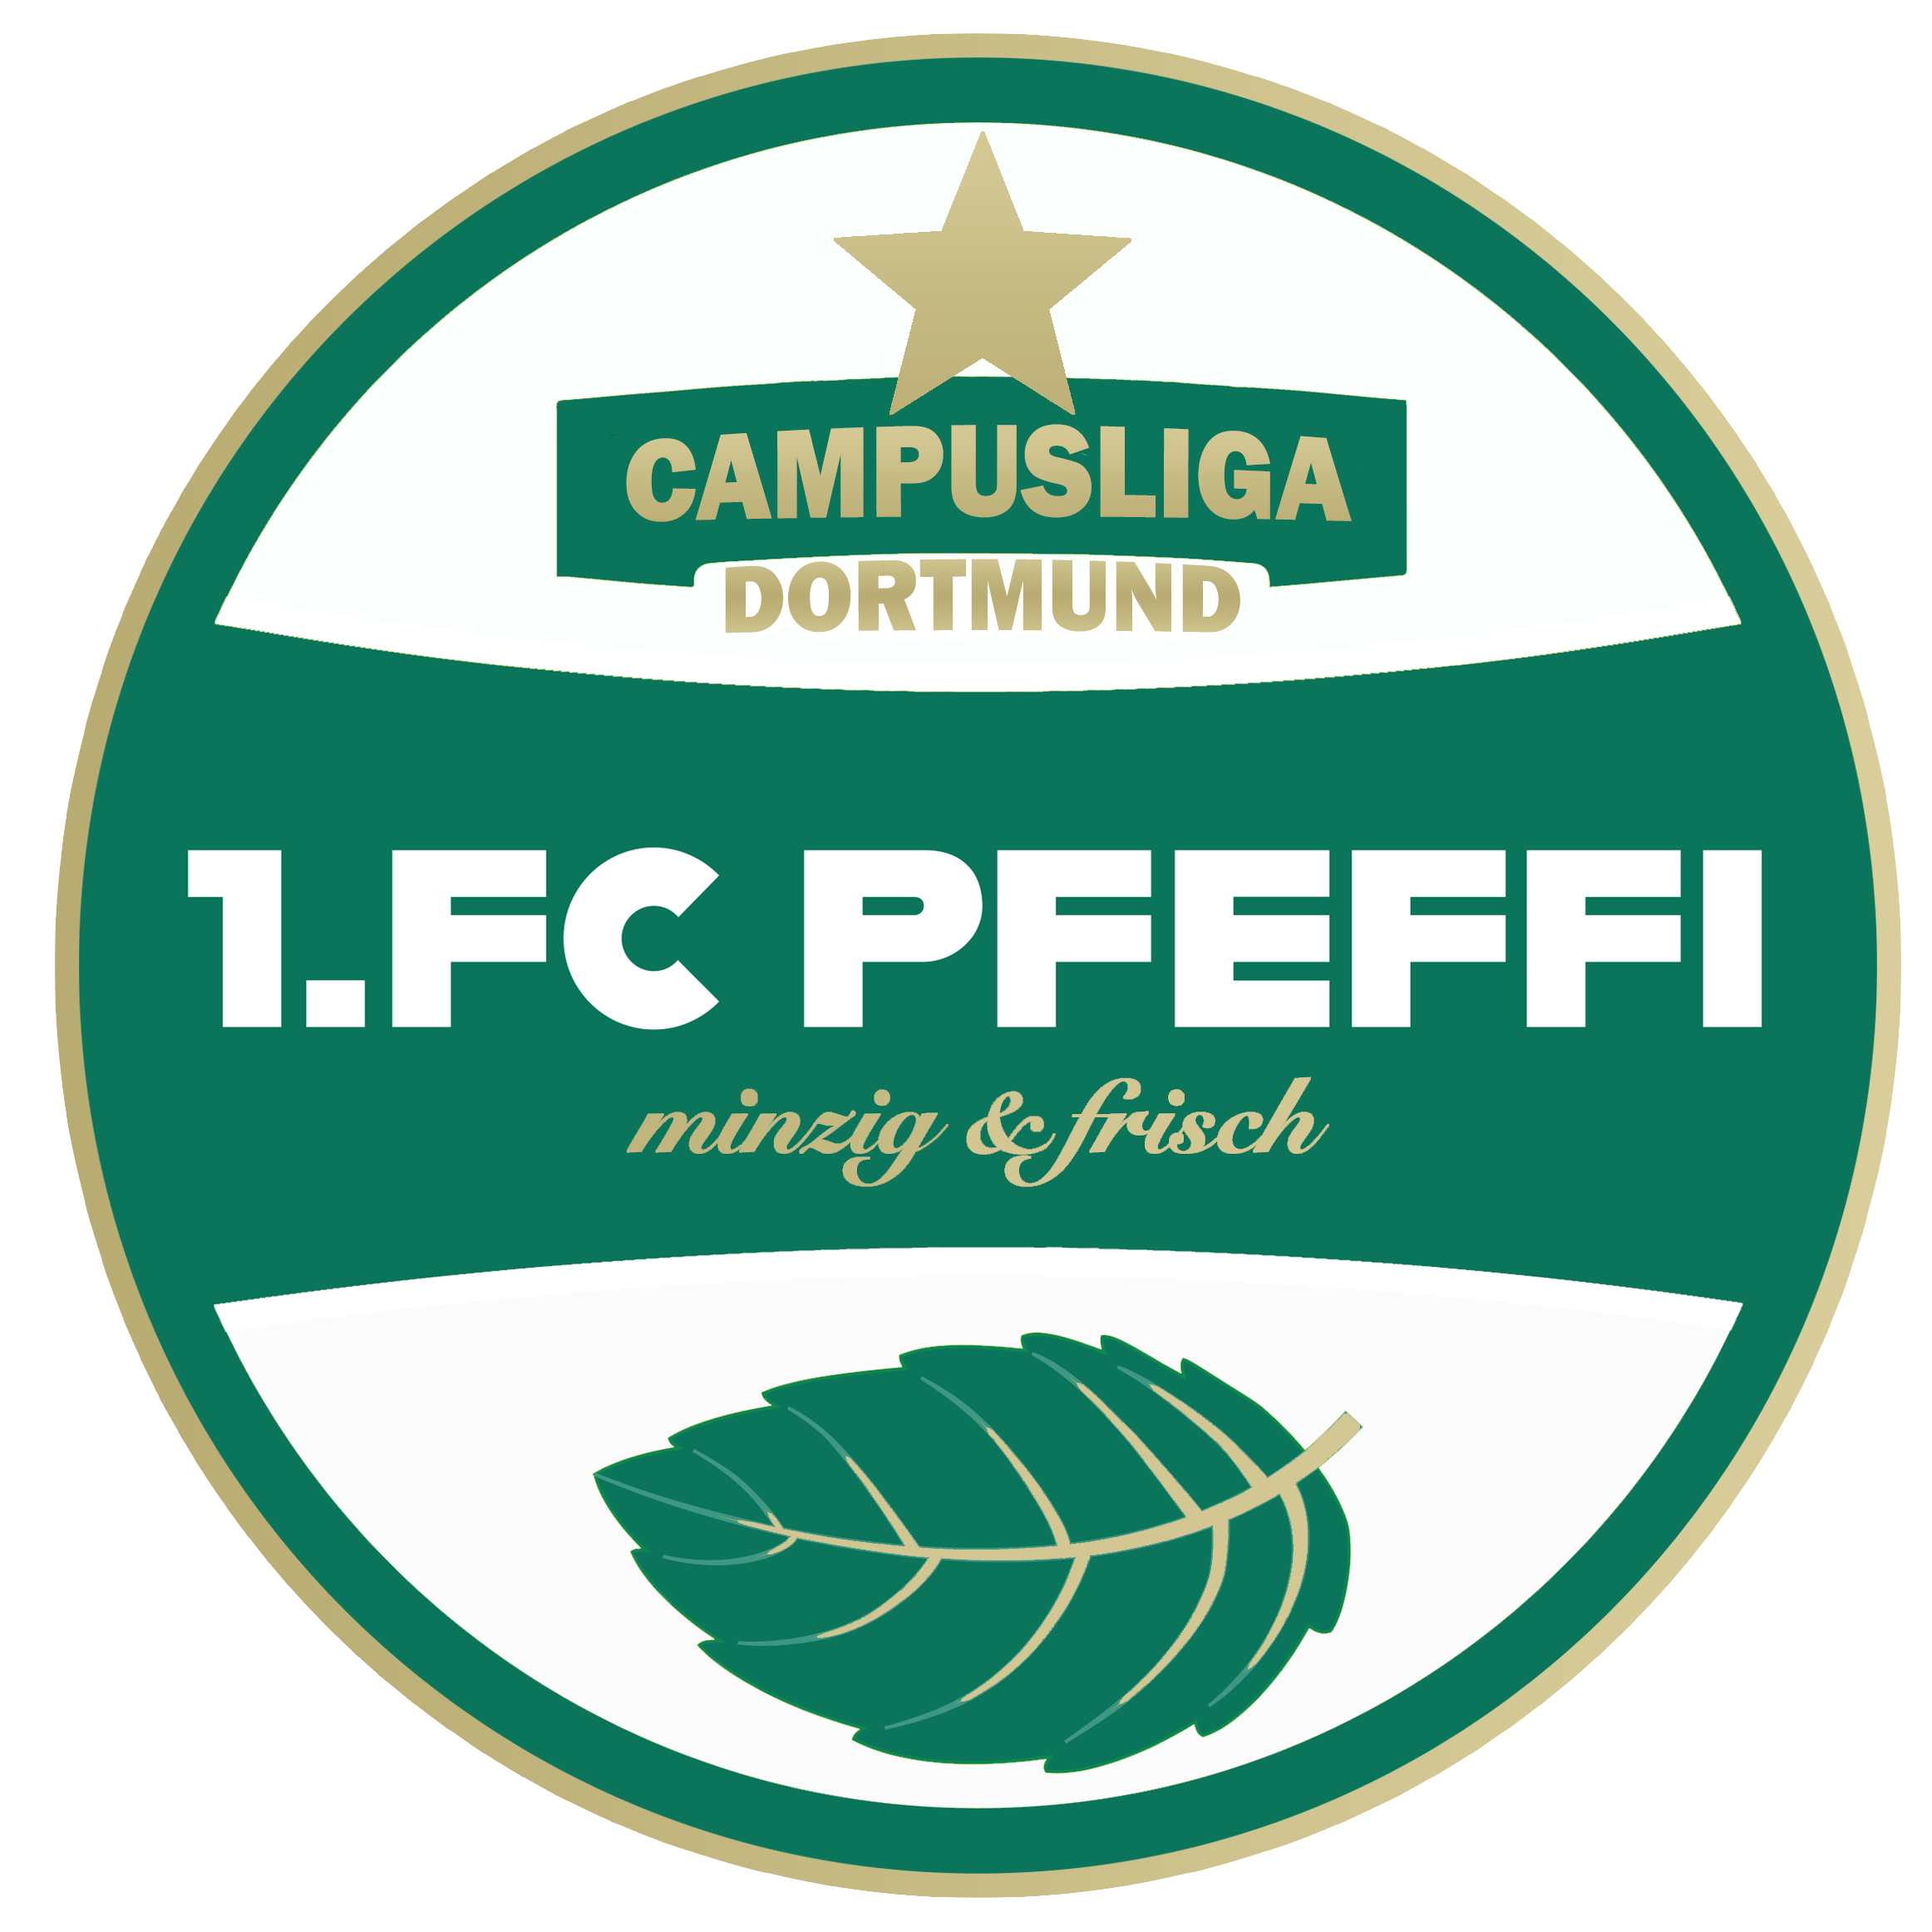 1.FC PFEFFI